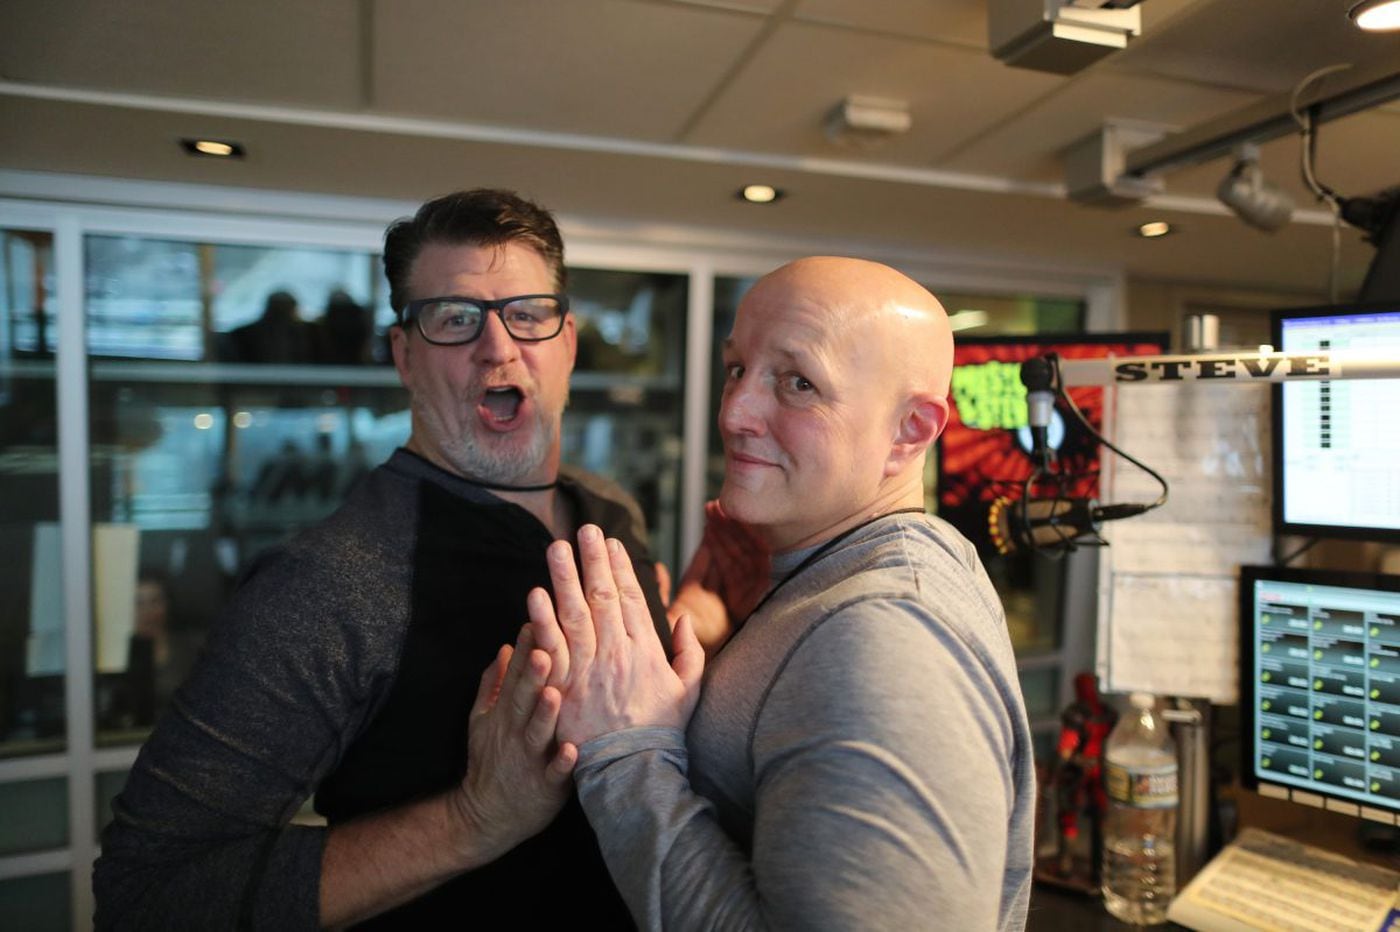 WMMR's Preston & Steve look back on 20 years in Philly radio